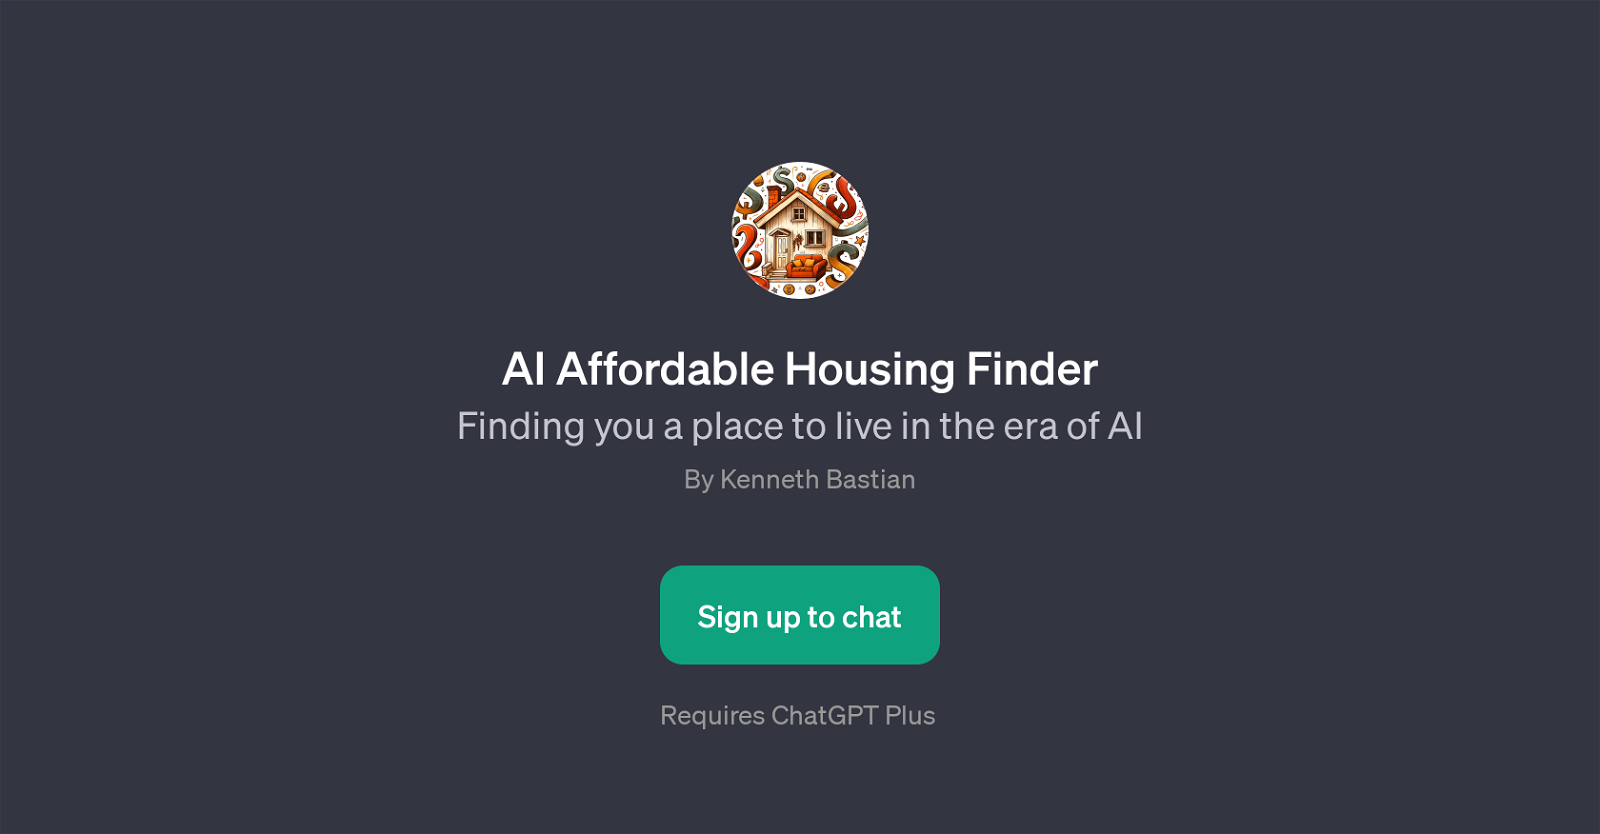 AI Affordable Housing Finder website